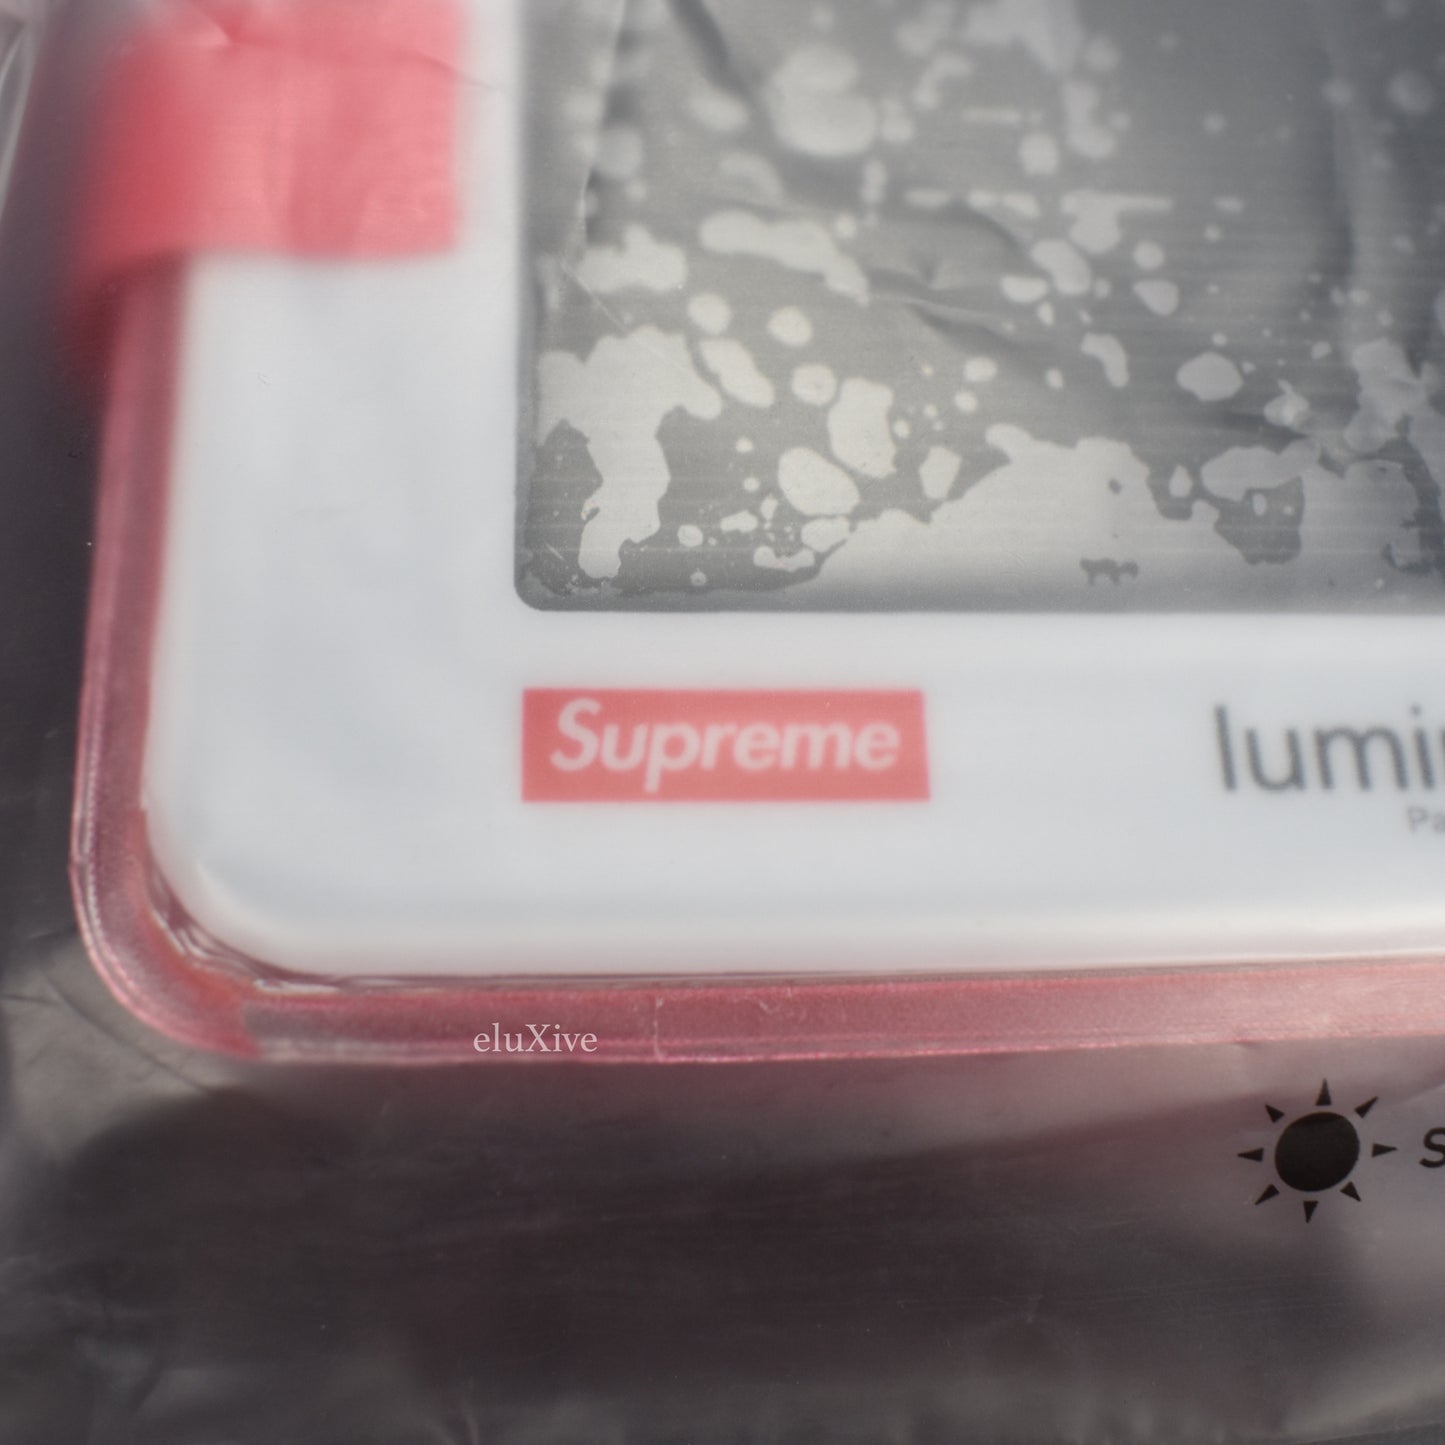 Supreme x LuminAID - Red Box Logo Packlite Nova